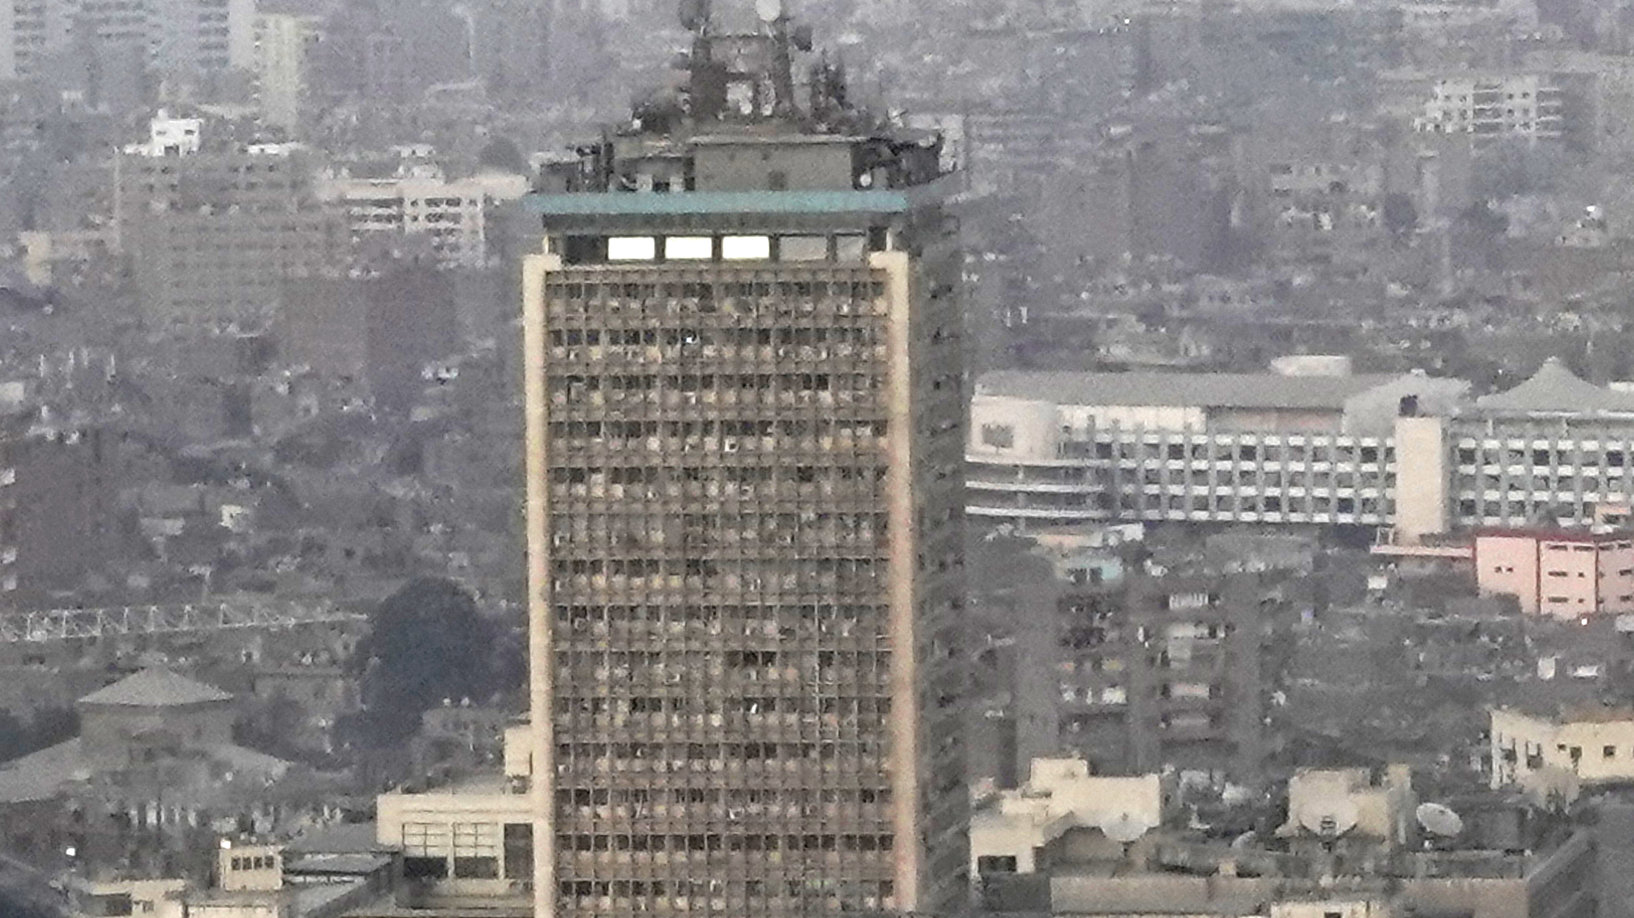 بسبب عدم صرف دواء له.. موظف يُلقي بنفسه من مبنى التلفزيون المصري